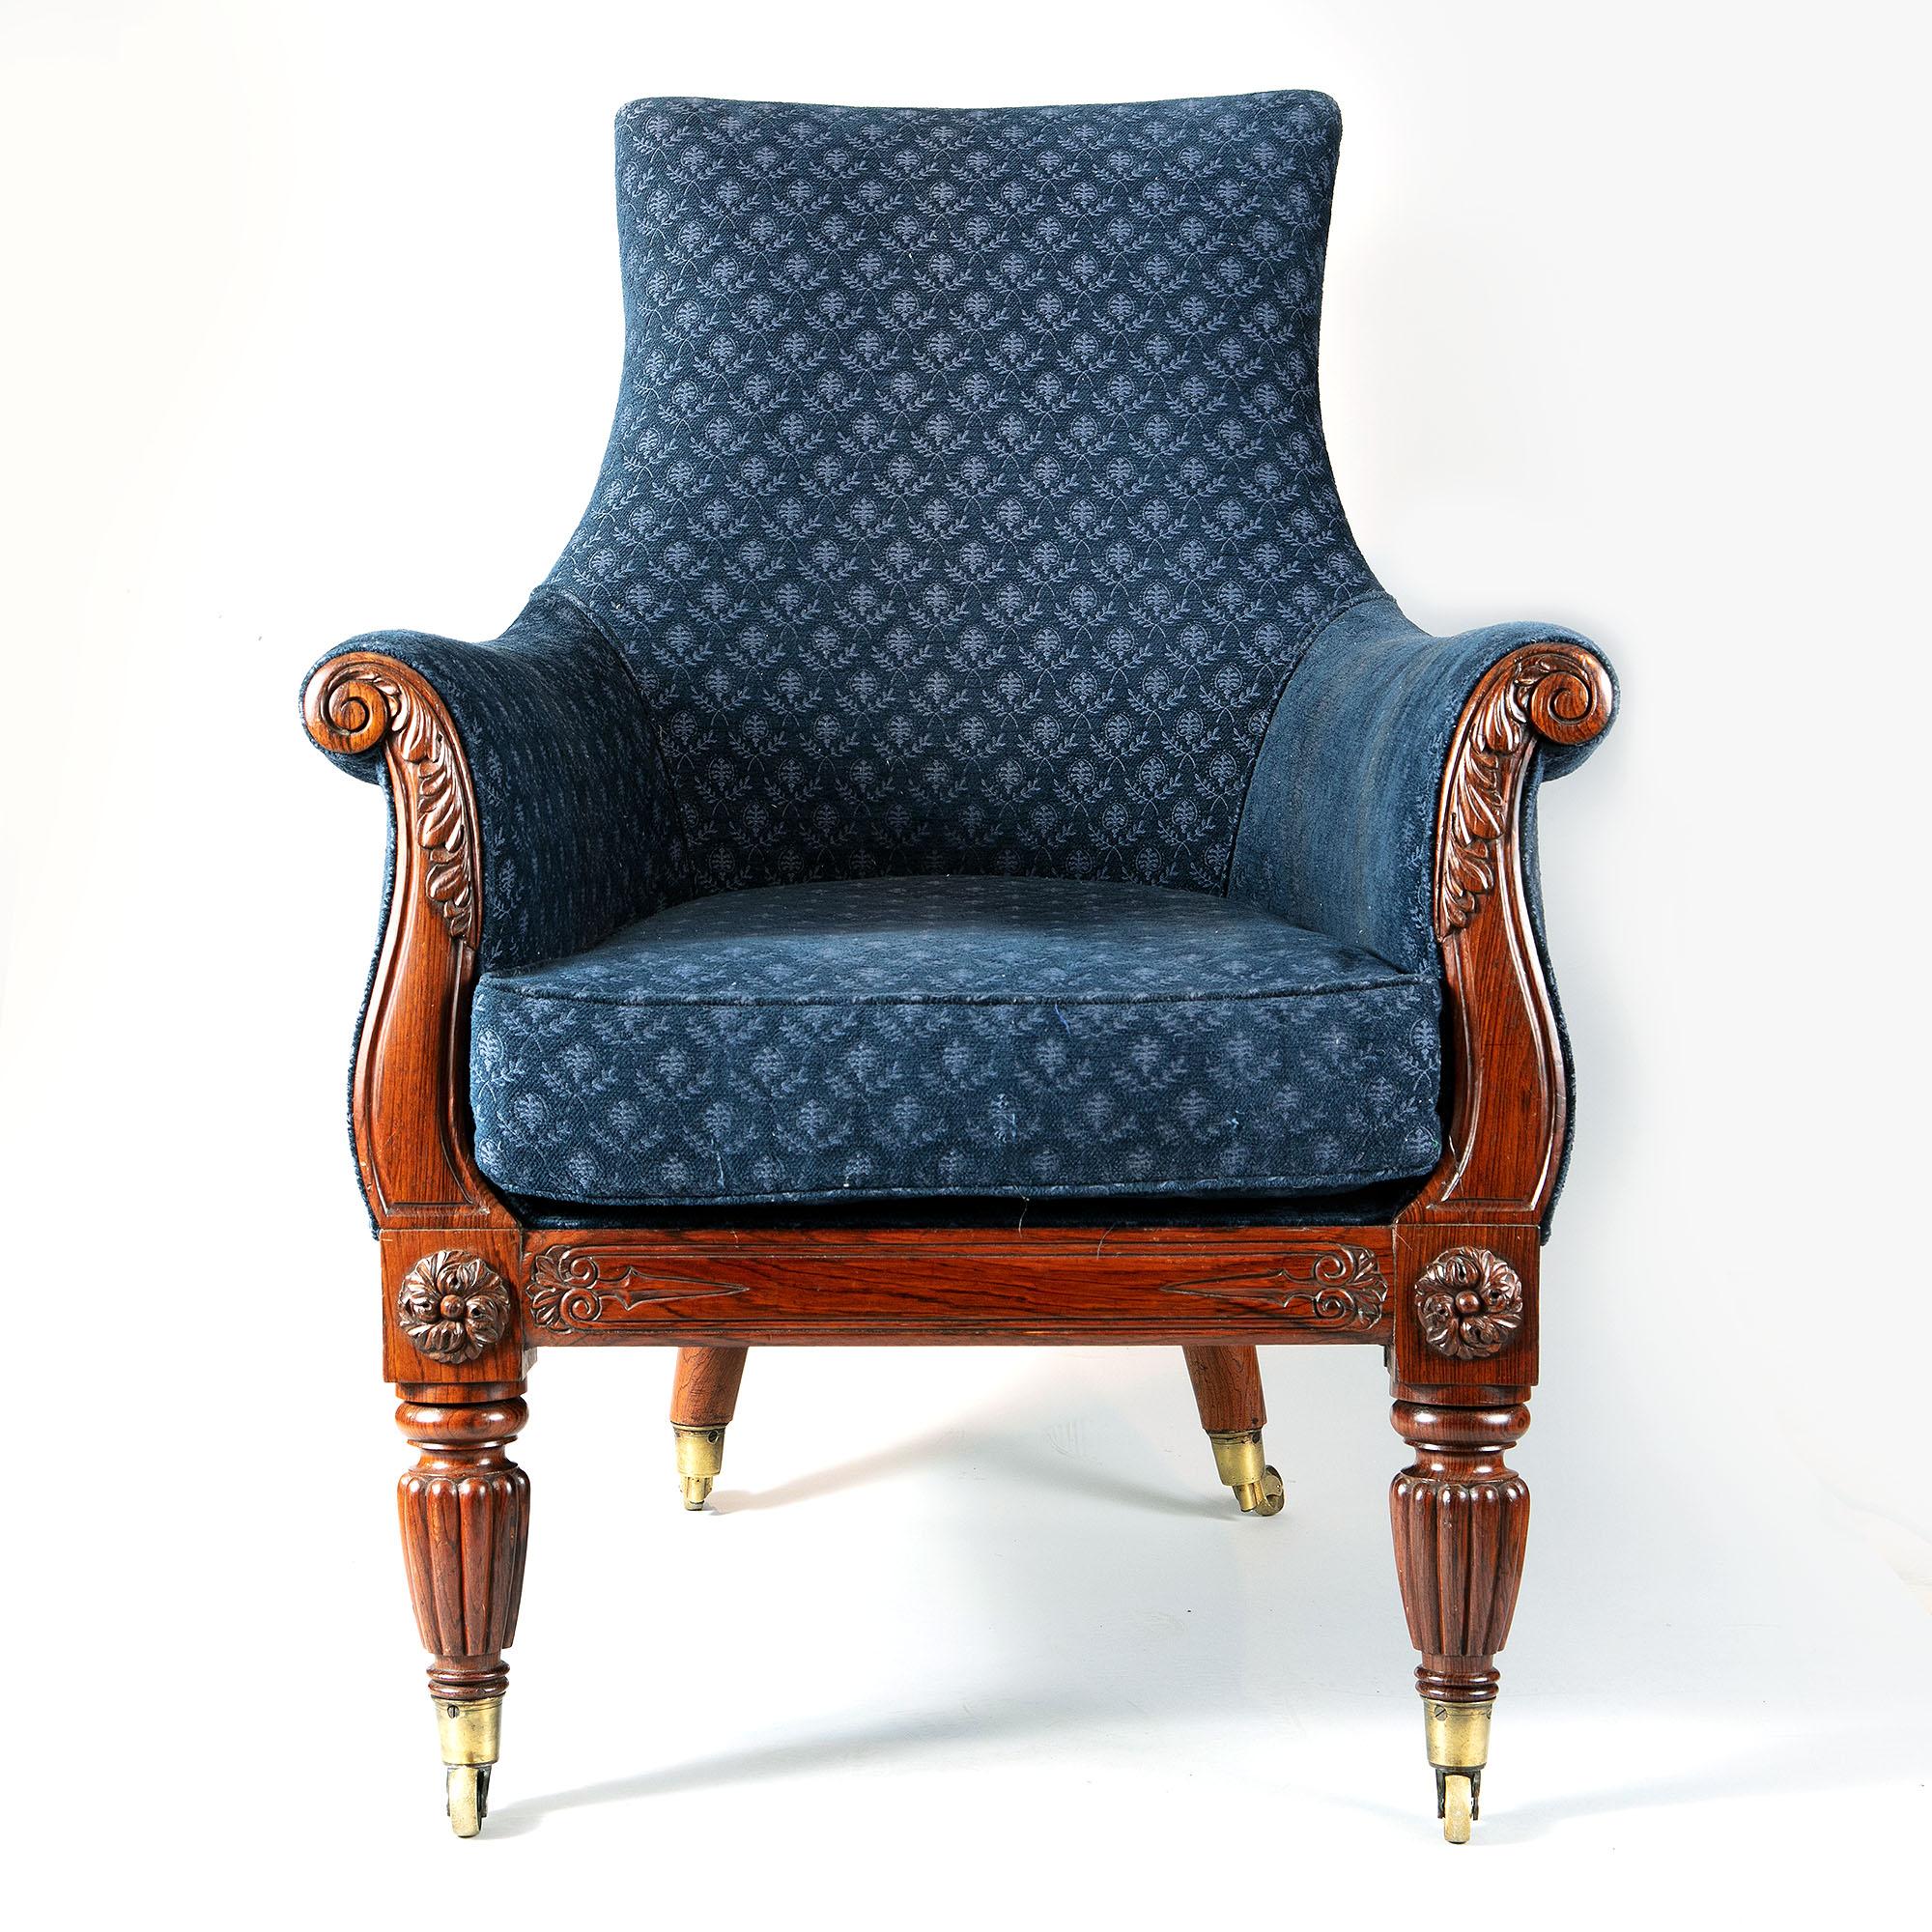 Ein sehr gutes Paar Bibliotheks-Sessel der Regency-Zeit aus Rosenholz in Form einer Leier. Gepolstert mit geformtem, blauem Material und losen weichen, dicken Kissen, haben die Stühle hohe geformte und geschwungene Rückenlehnen mit ausgebreiteten